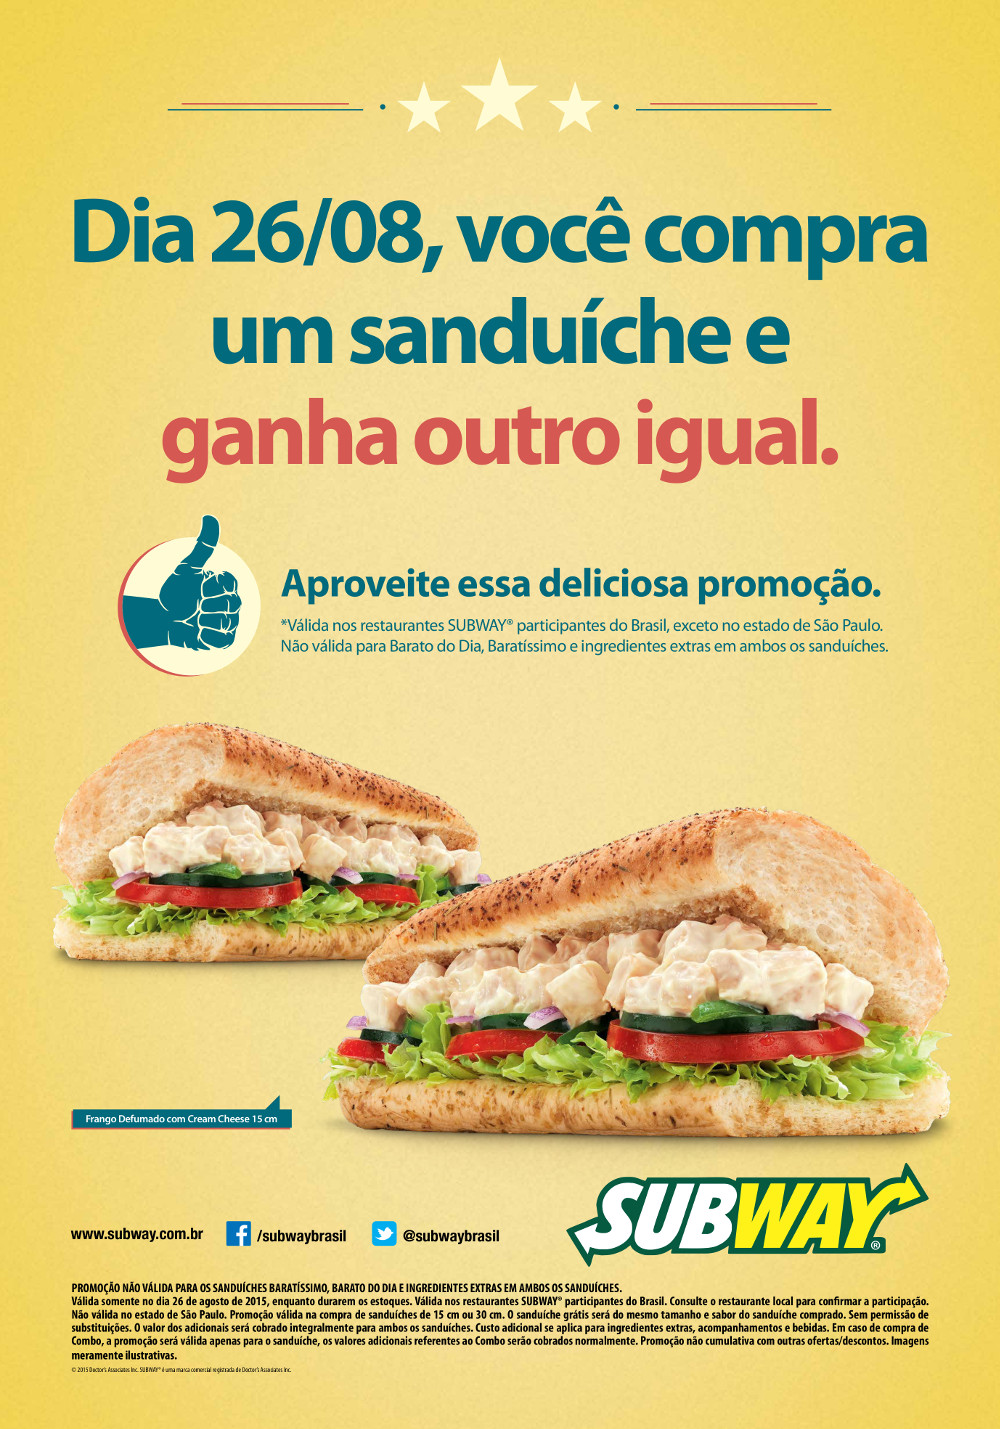 Subway comemora Dia Mundial do Sanduíche com promoção e doação